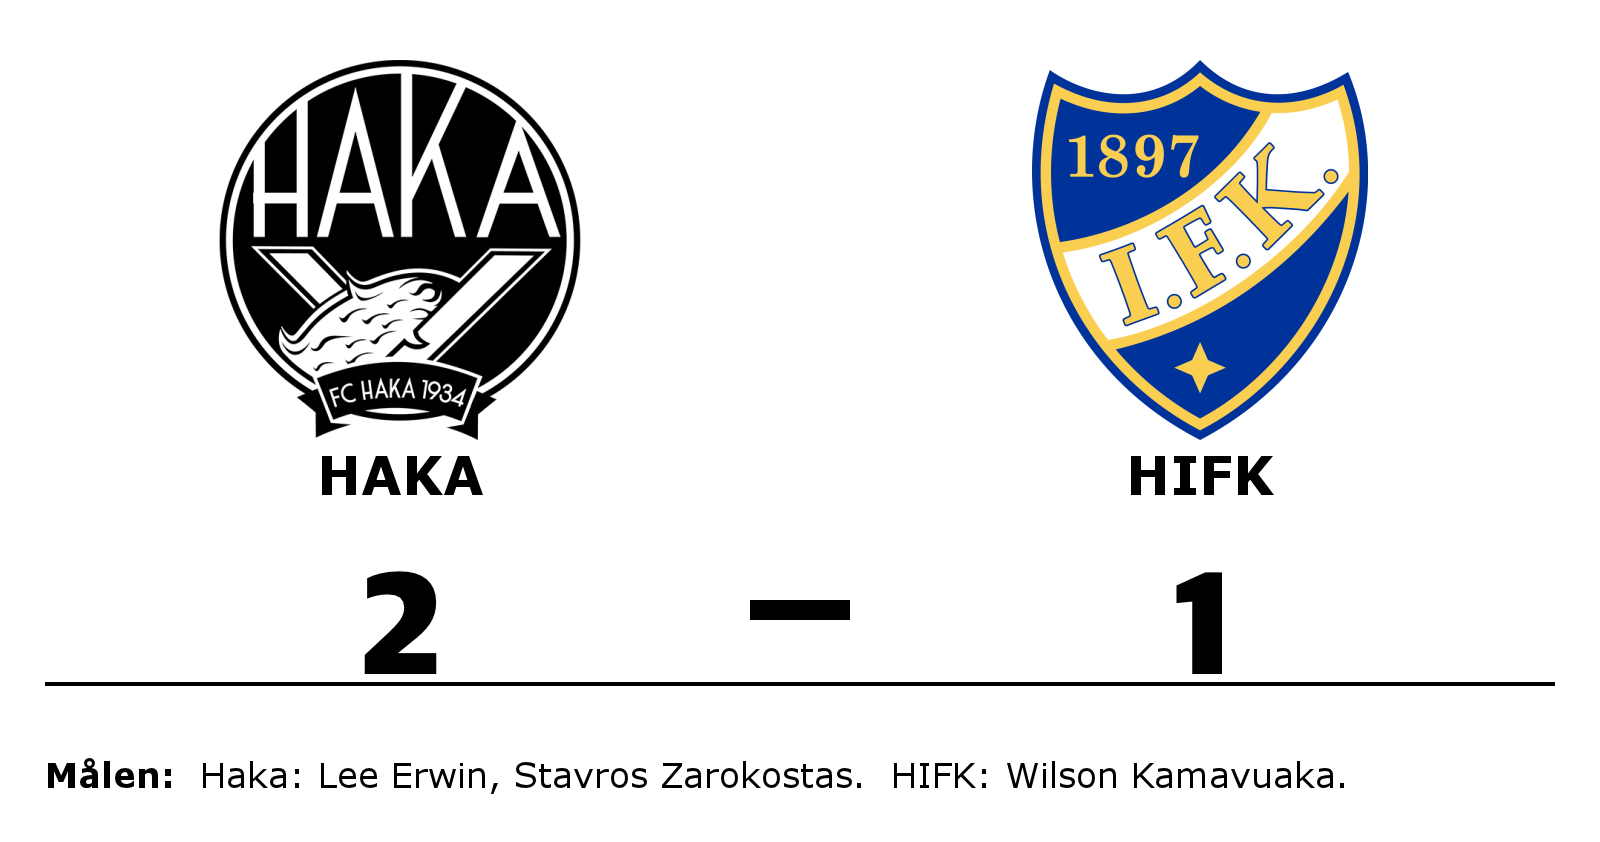 Haka vann mot HIFK